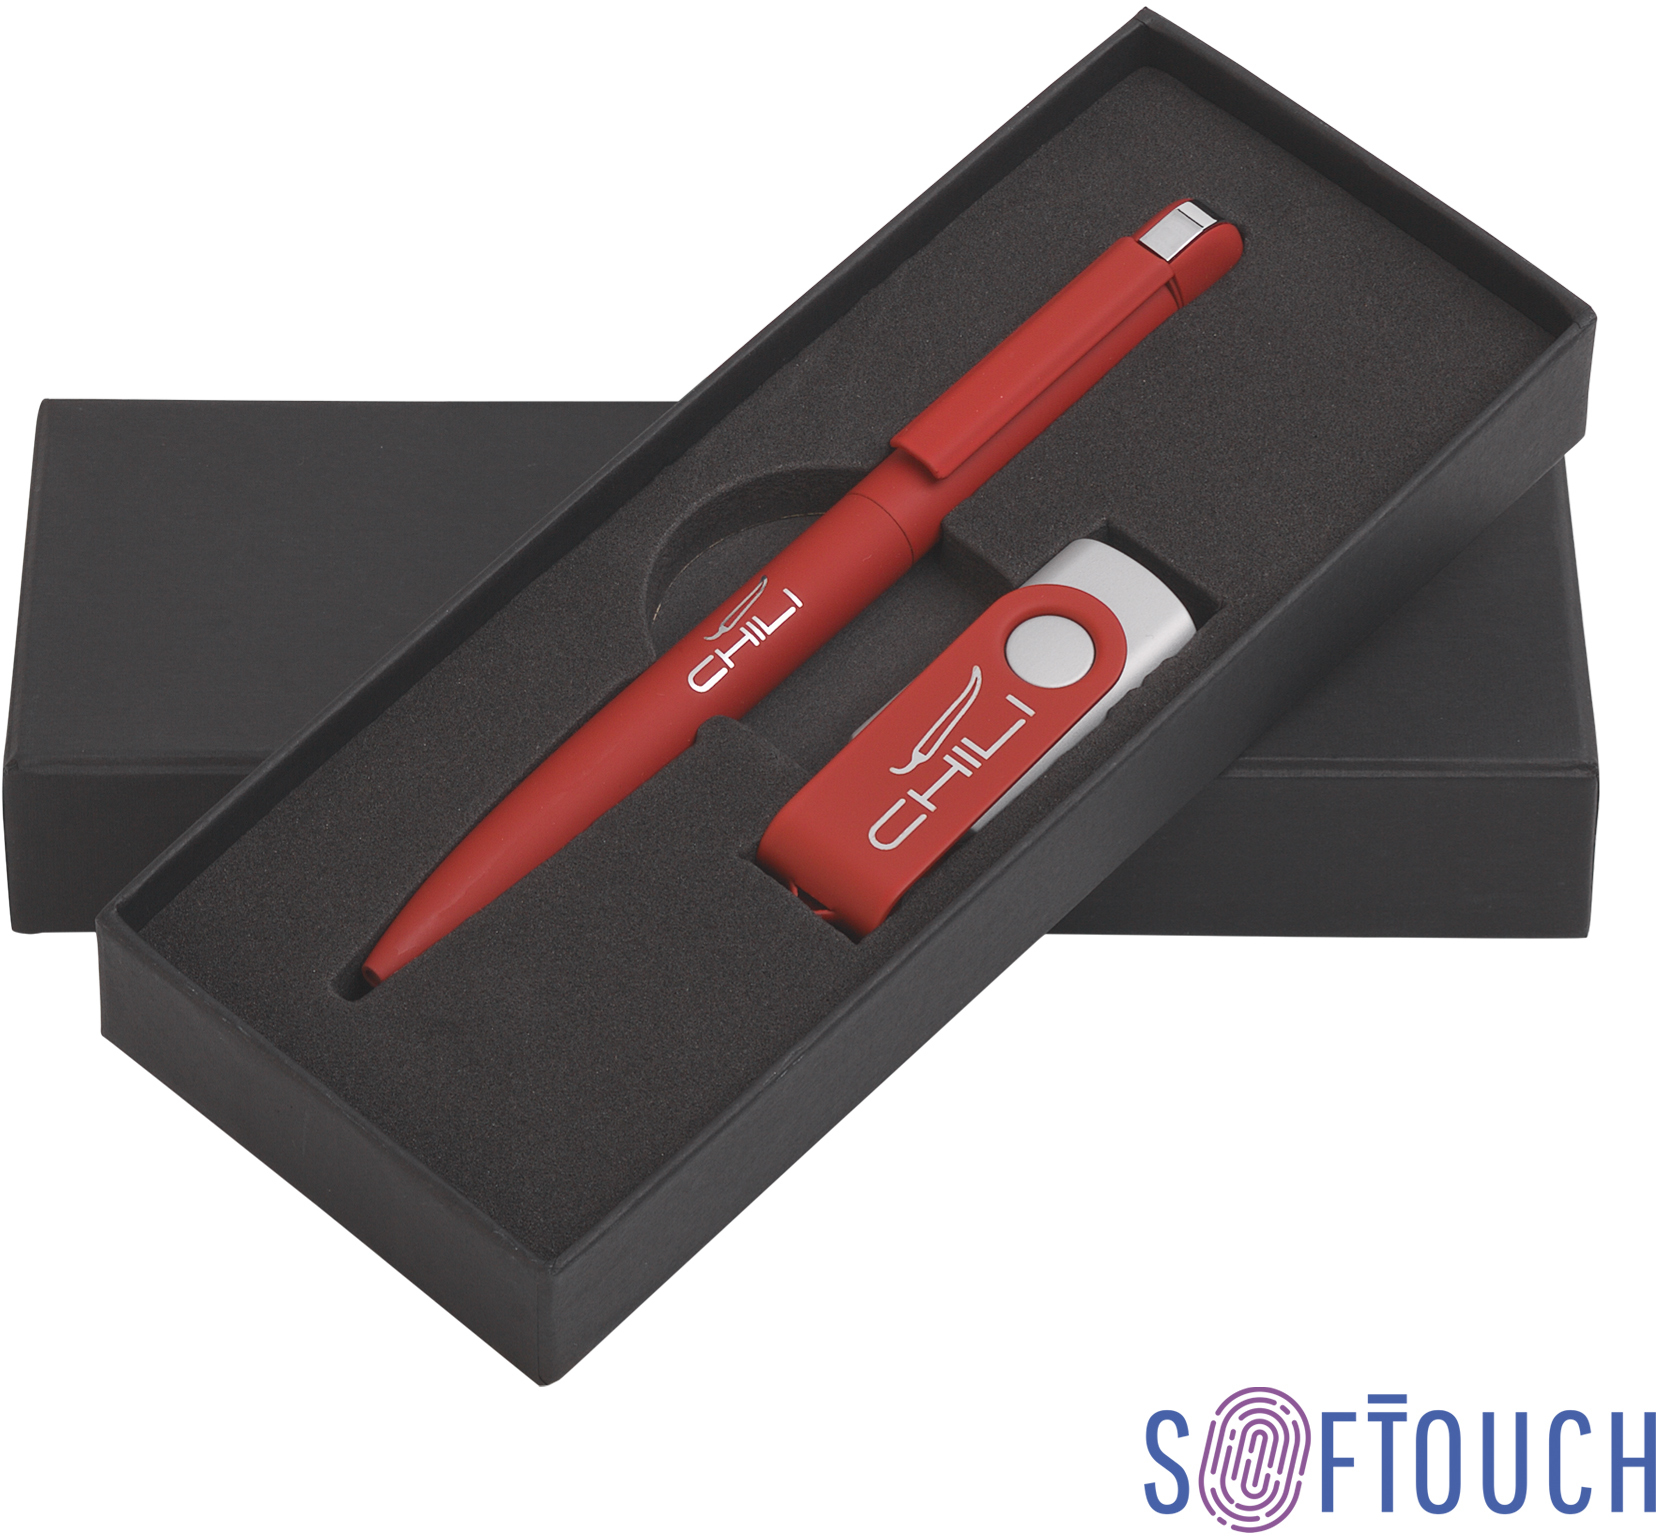 Артикул: E6877-4S/8Gb — Набор ручка + флеш-карта 8 Гб в футляре, покрытие soft touch